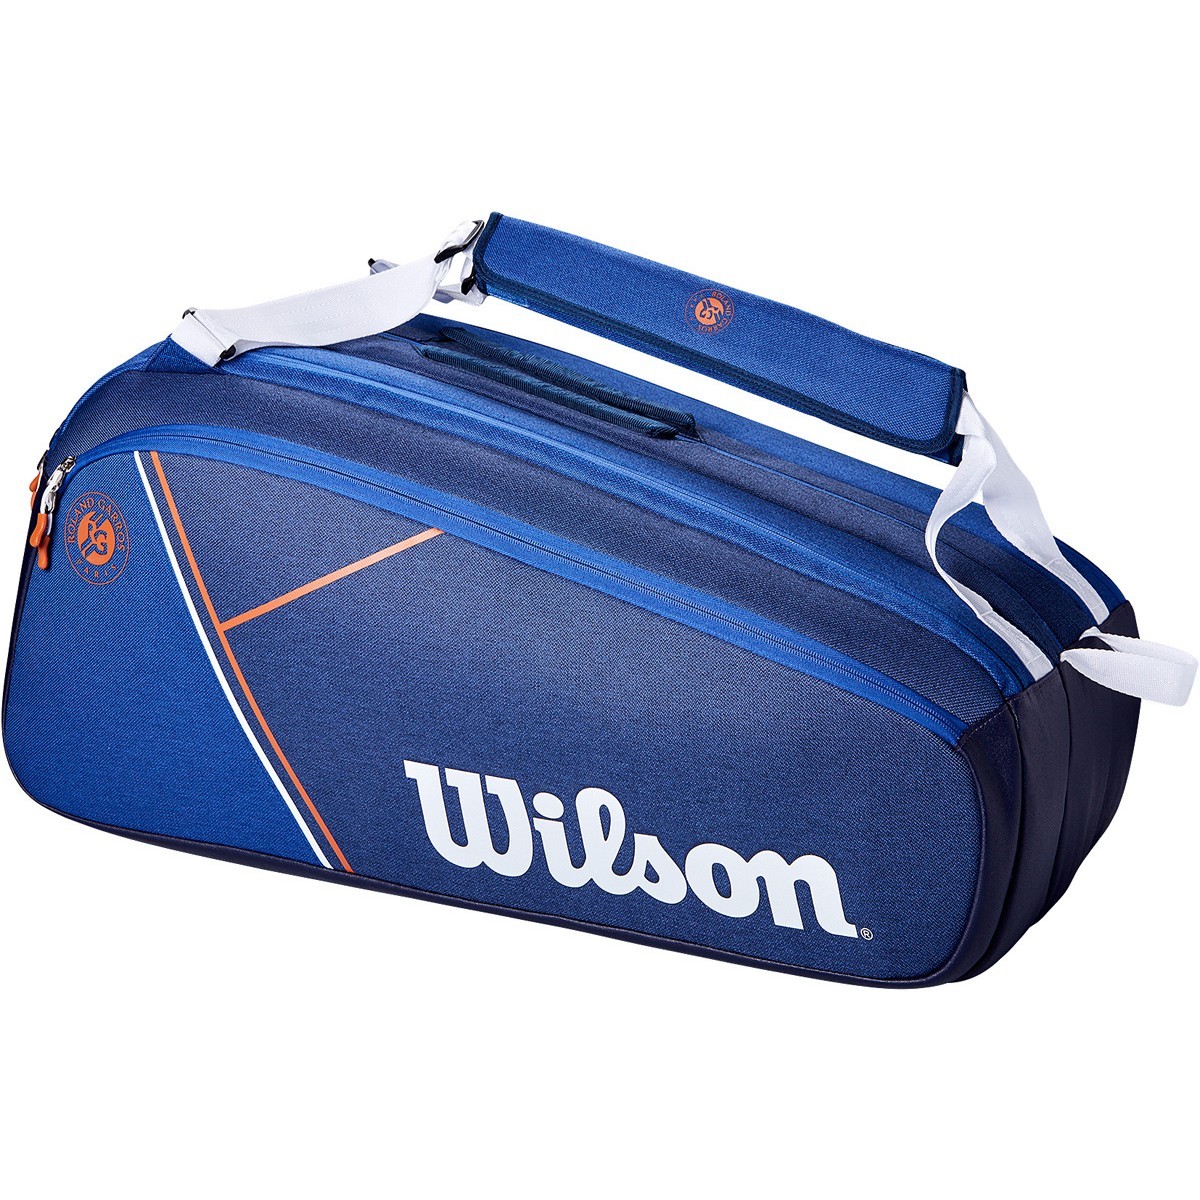 Теннисная сумка Wilson Roland Garros Super Tour 9 Pk Bag blue/white clay red